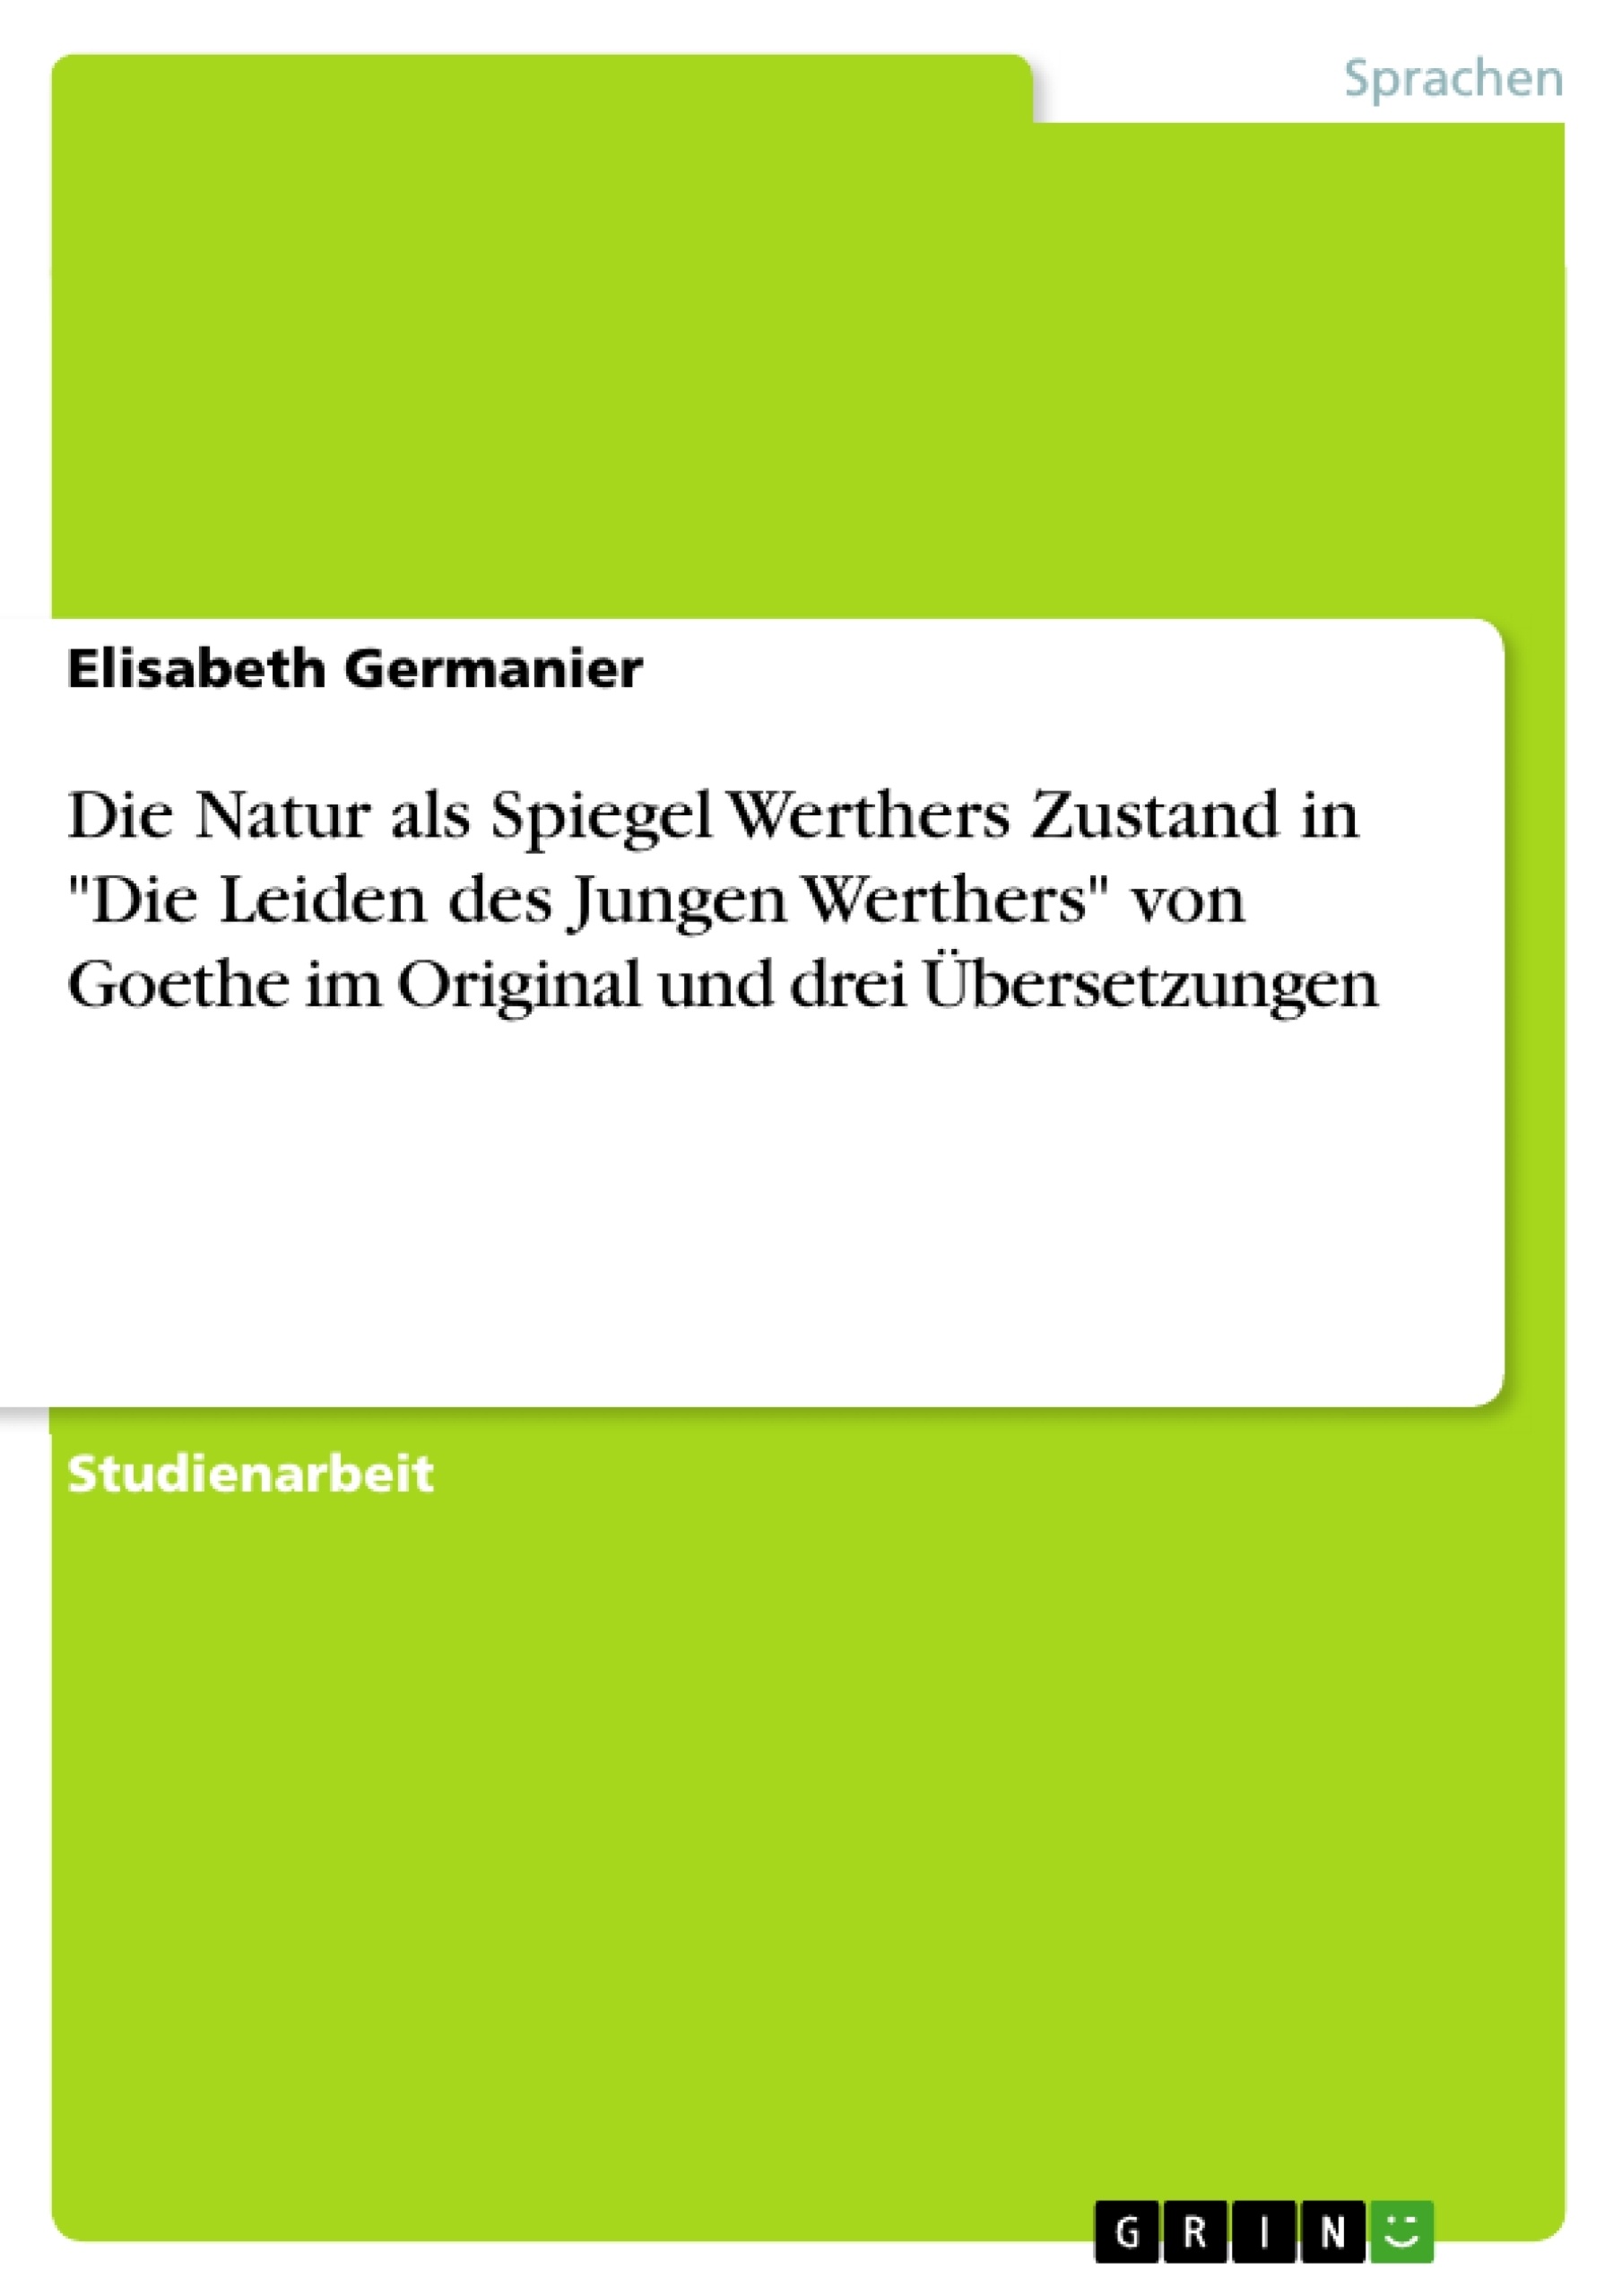 Title: Die Natur als Spiegel Werthers Zustand in  "Die Leiden des Jungen Werthers" von Goethe  im Original und drei Übersetzungen